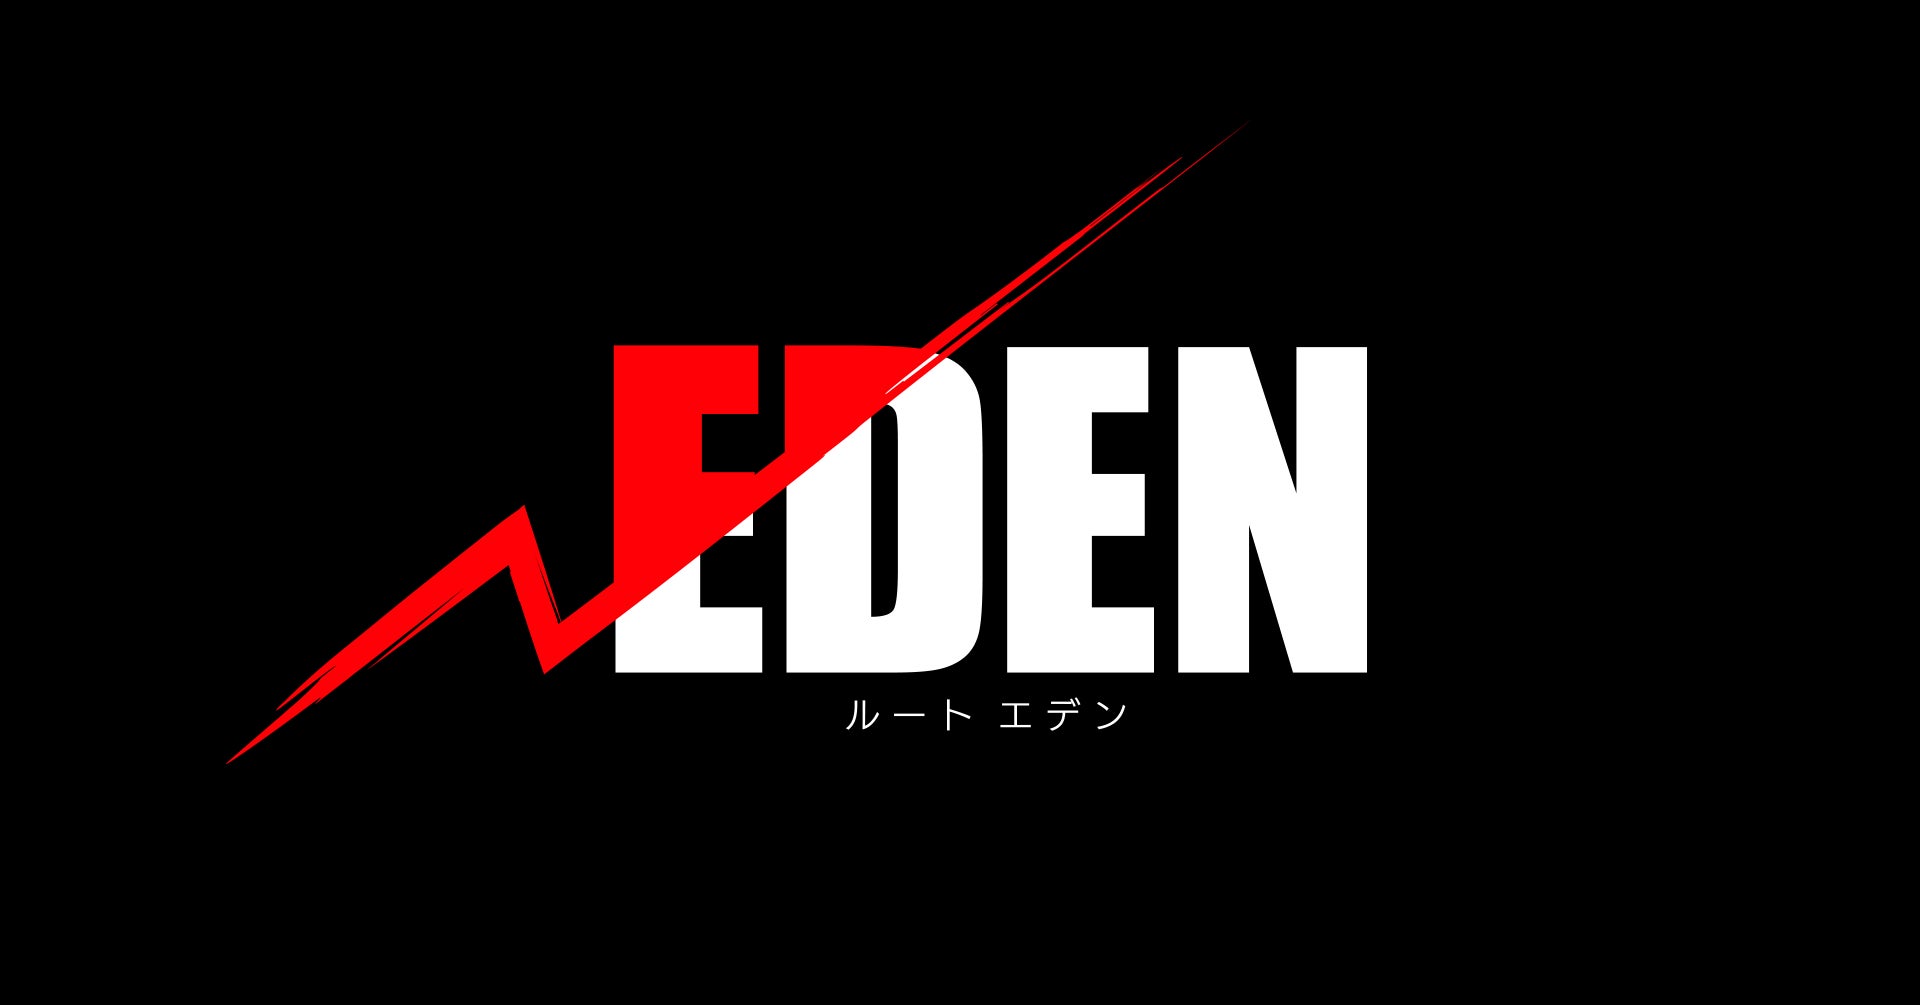 カヤックアキバスタジオが新規IP「√EDEN（ルートエデン）」を創出